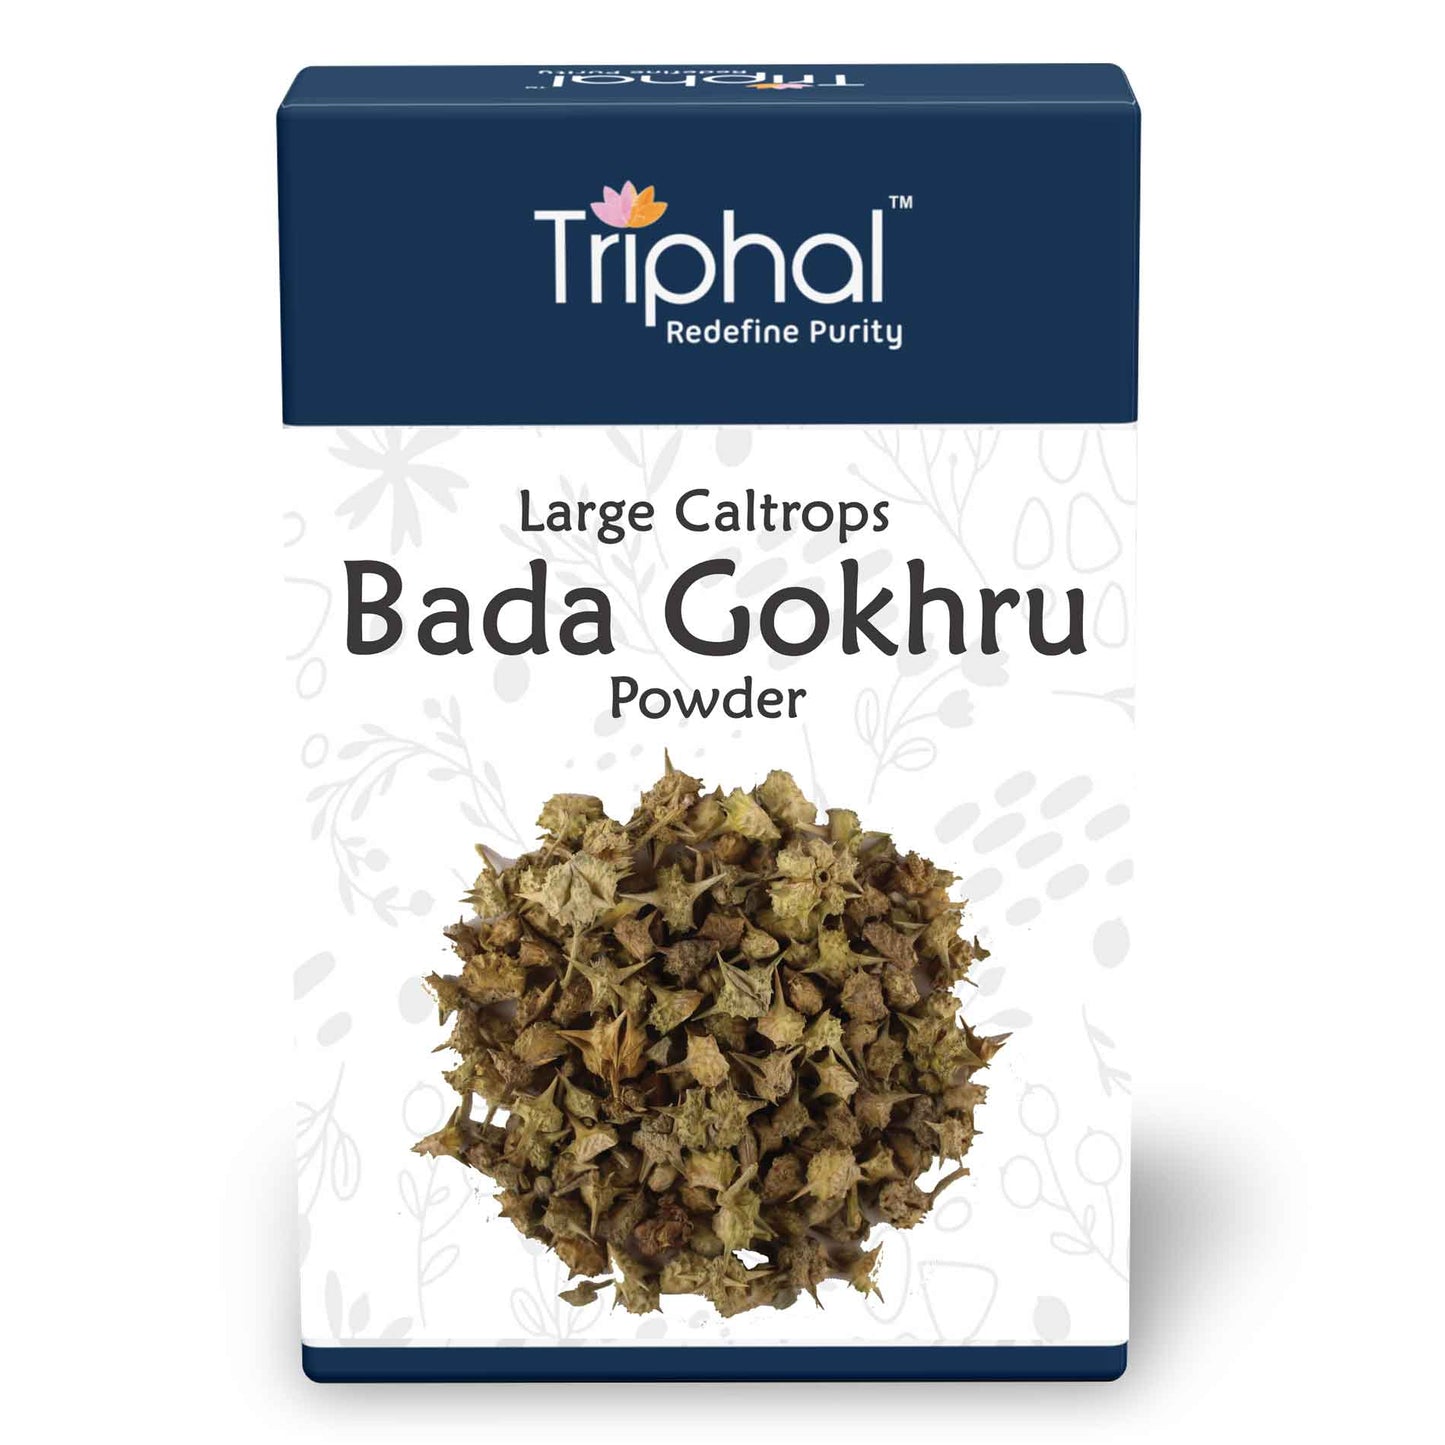 Bada Gokhru Powder - Original and Pure